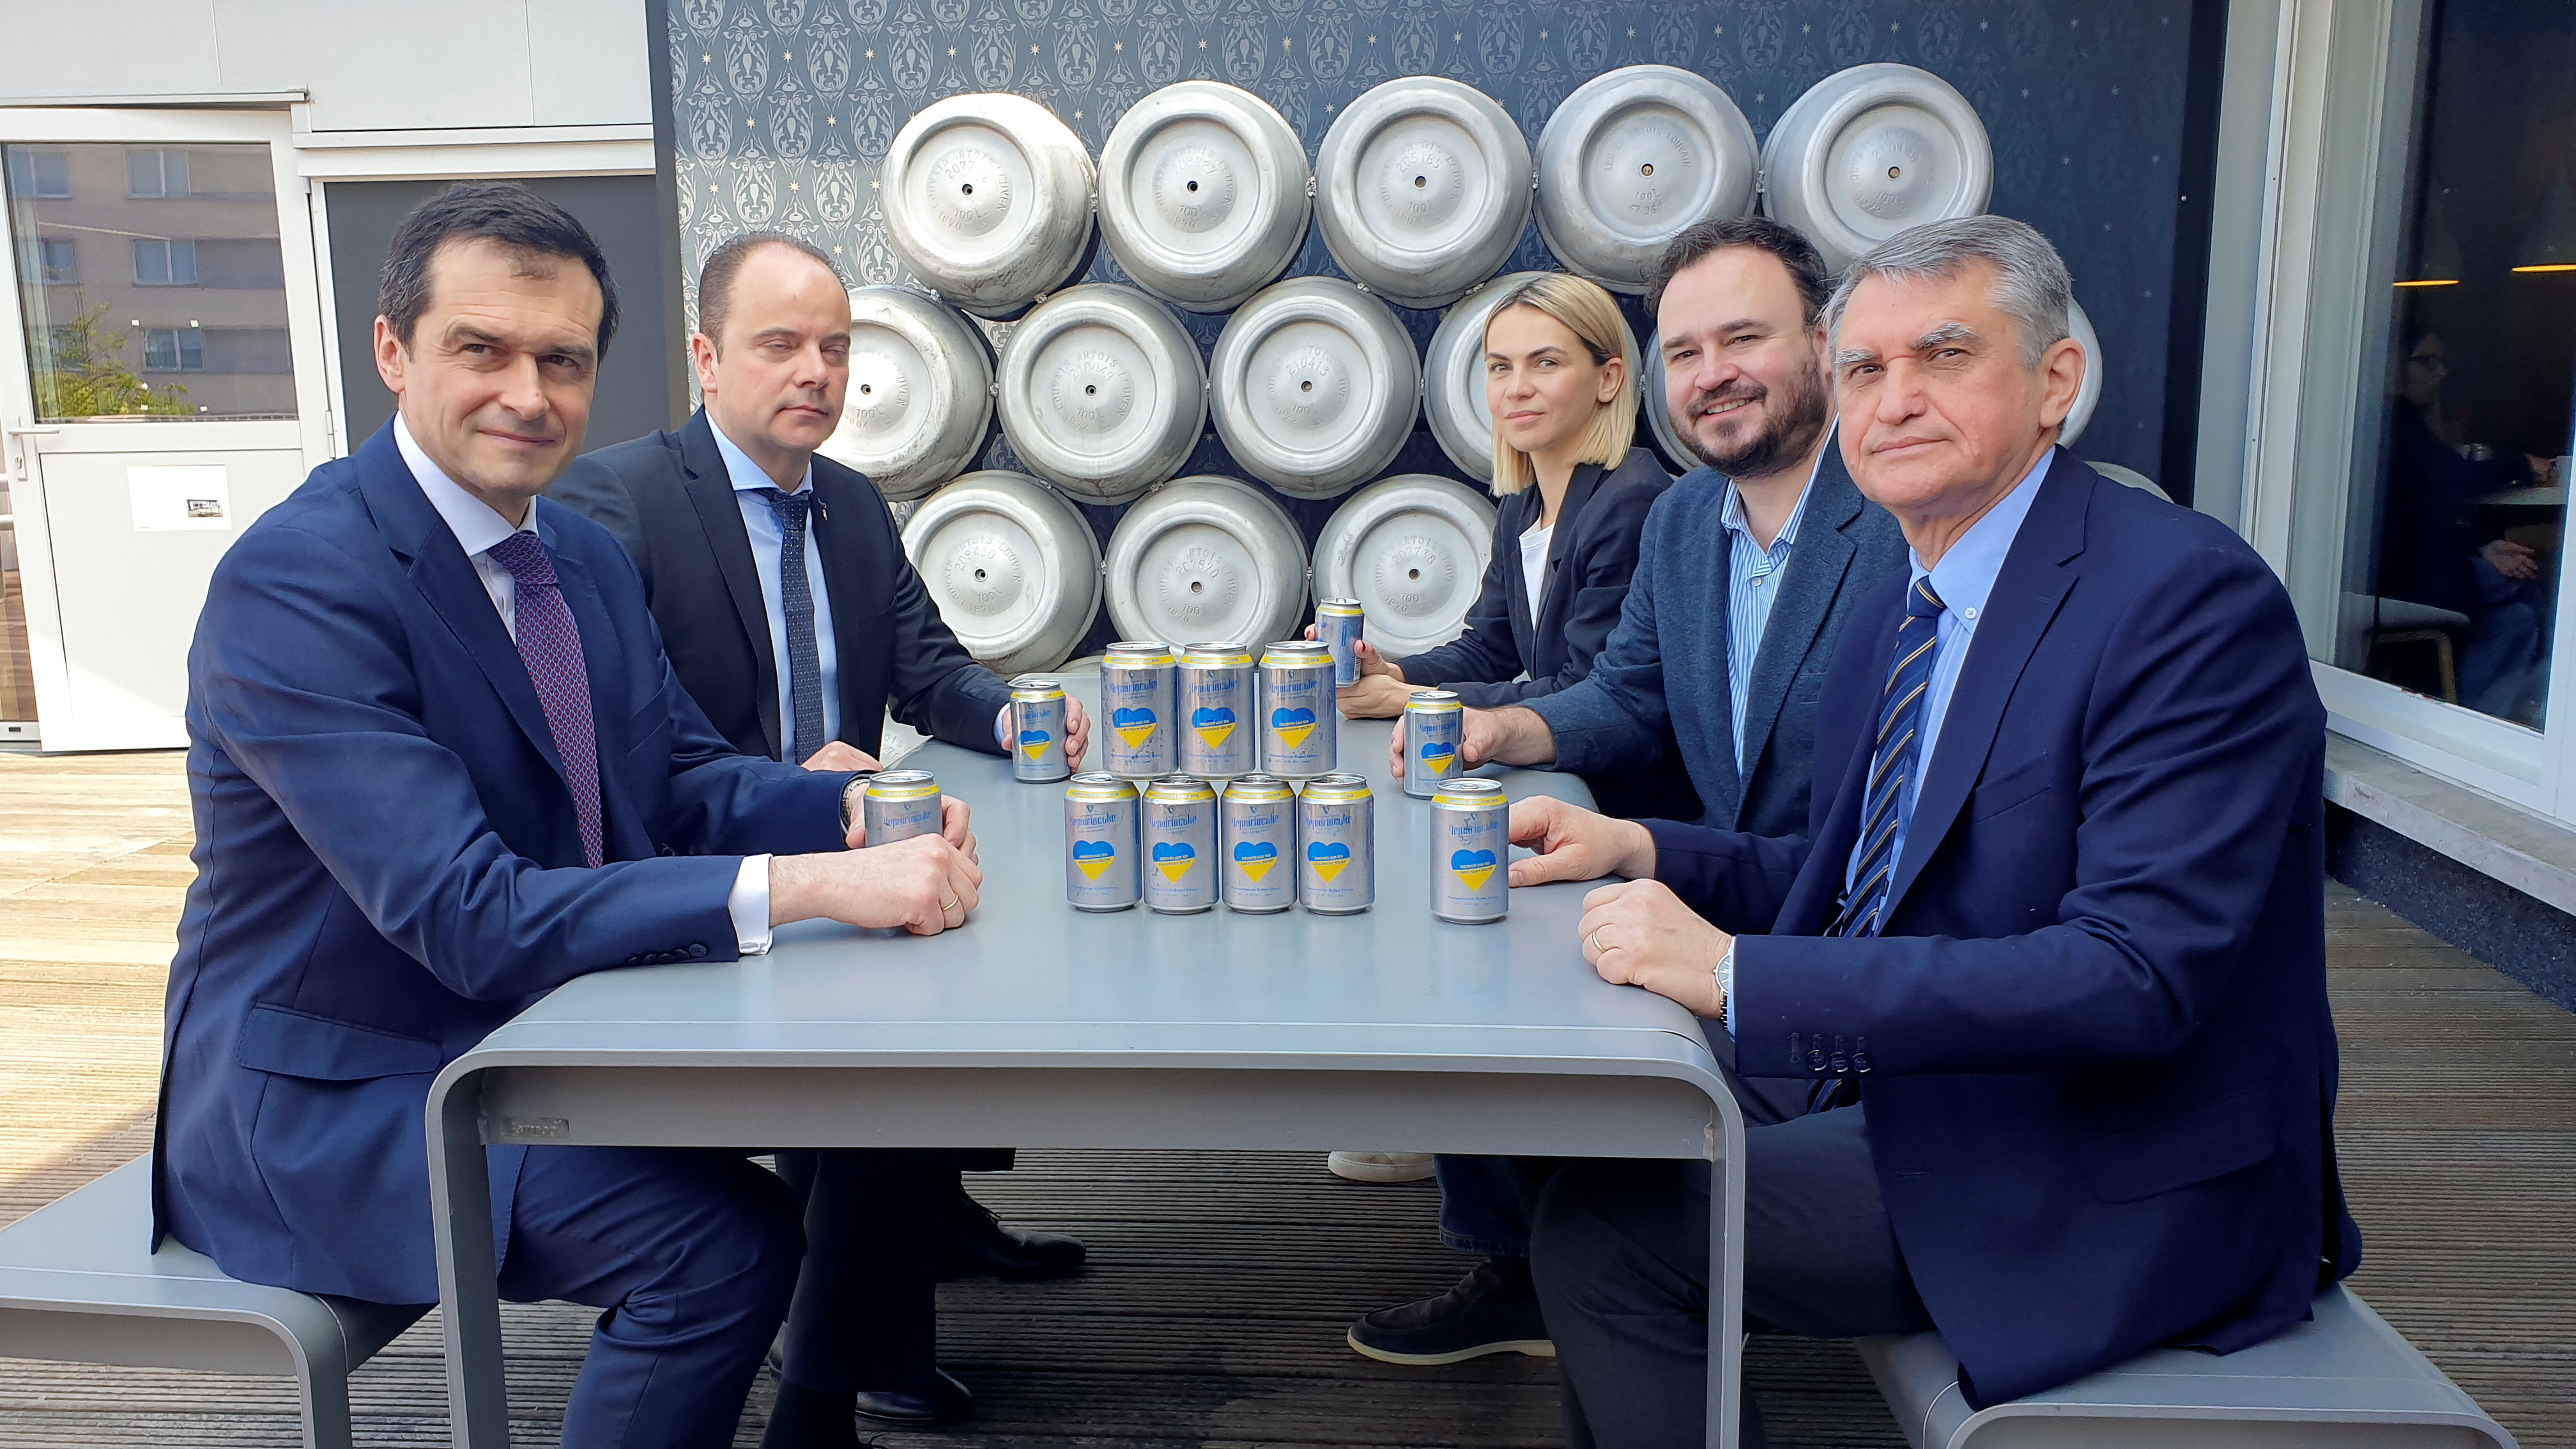 Launch of the production of Ukrainian beer in Belgium